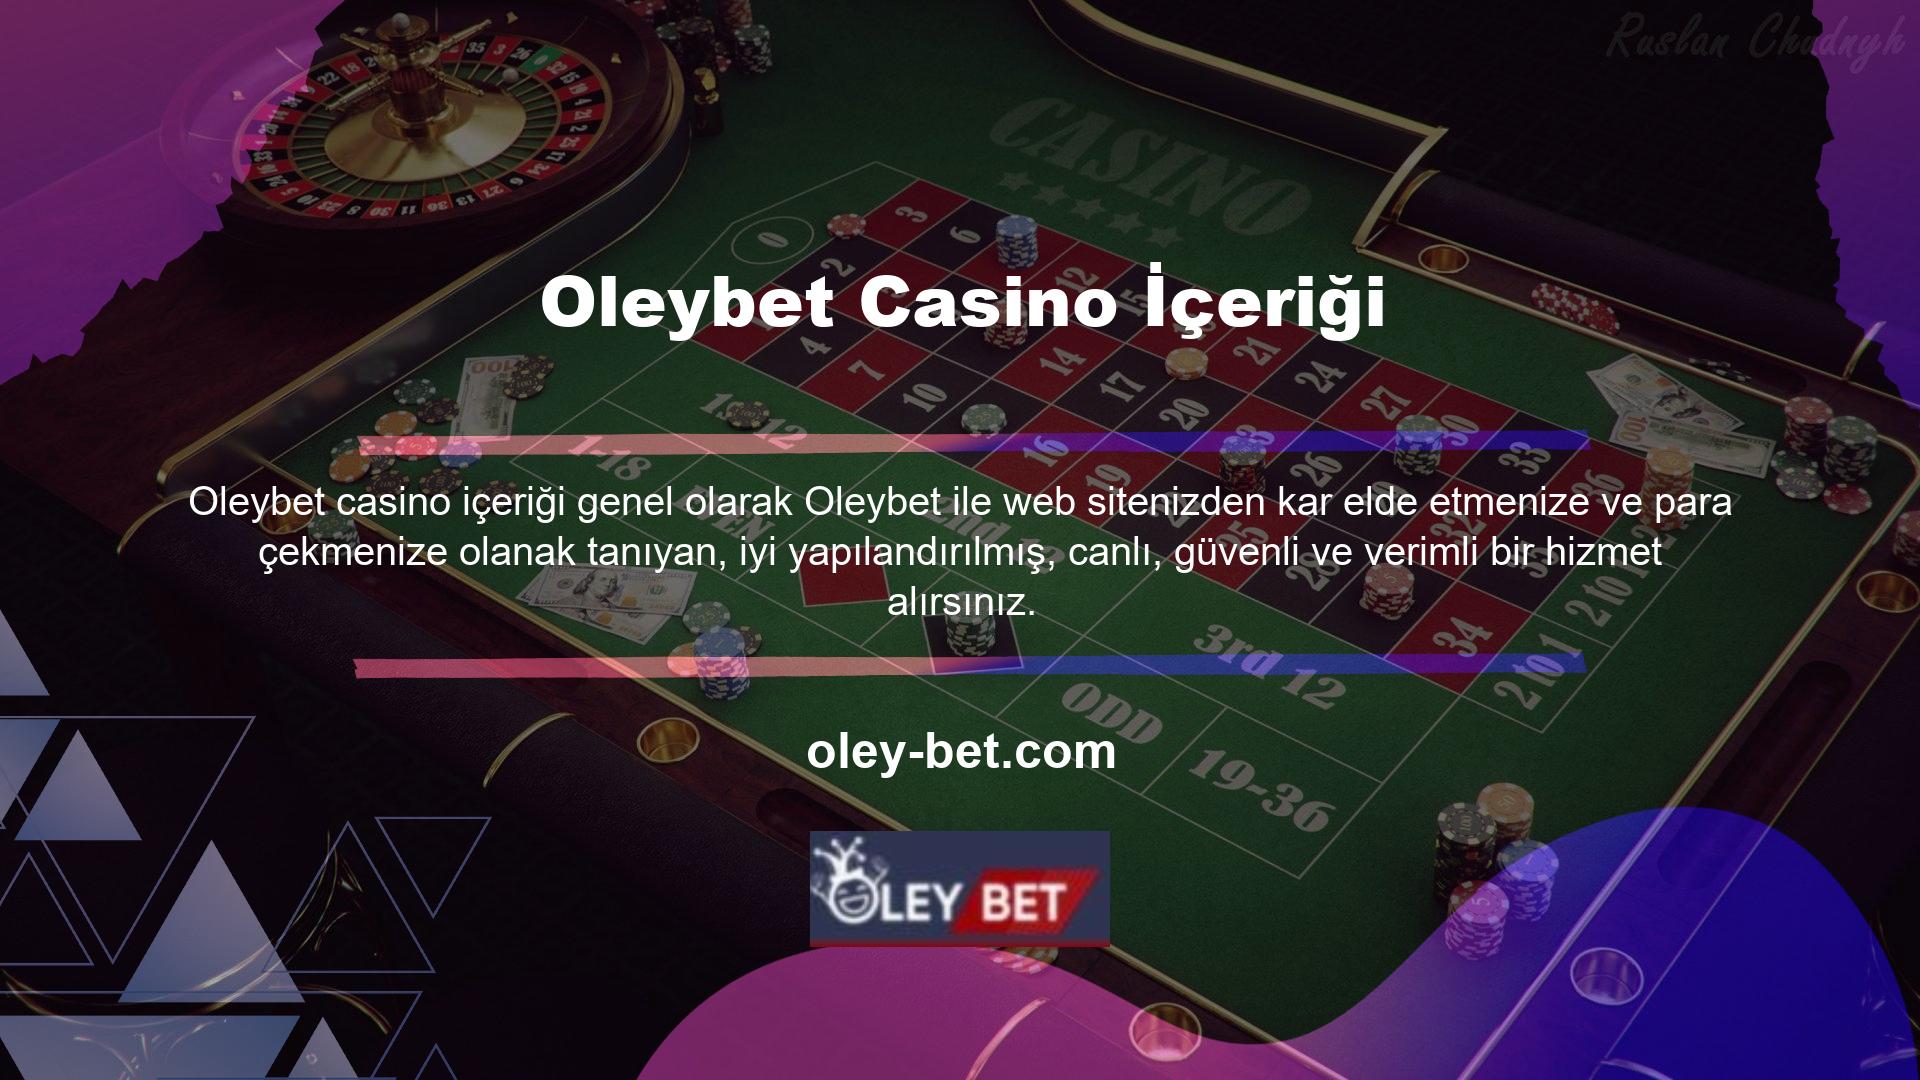 Kullanıcıların casino içeriği bölümünde Oleybet slotlarını oynayarak oldukça yüksek miktarlarda paralar kazandıkları bilinmektedir